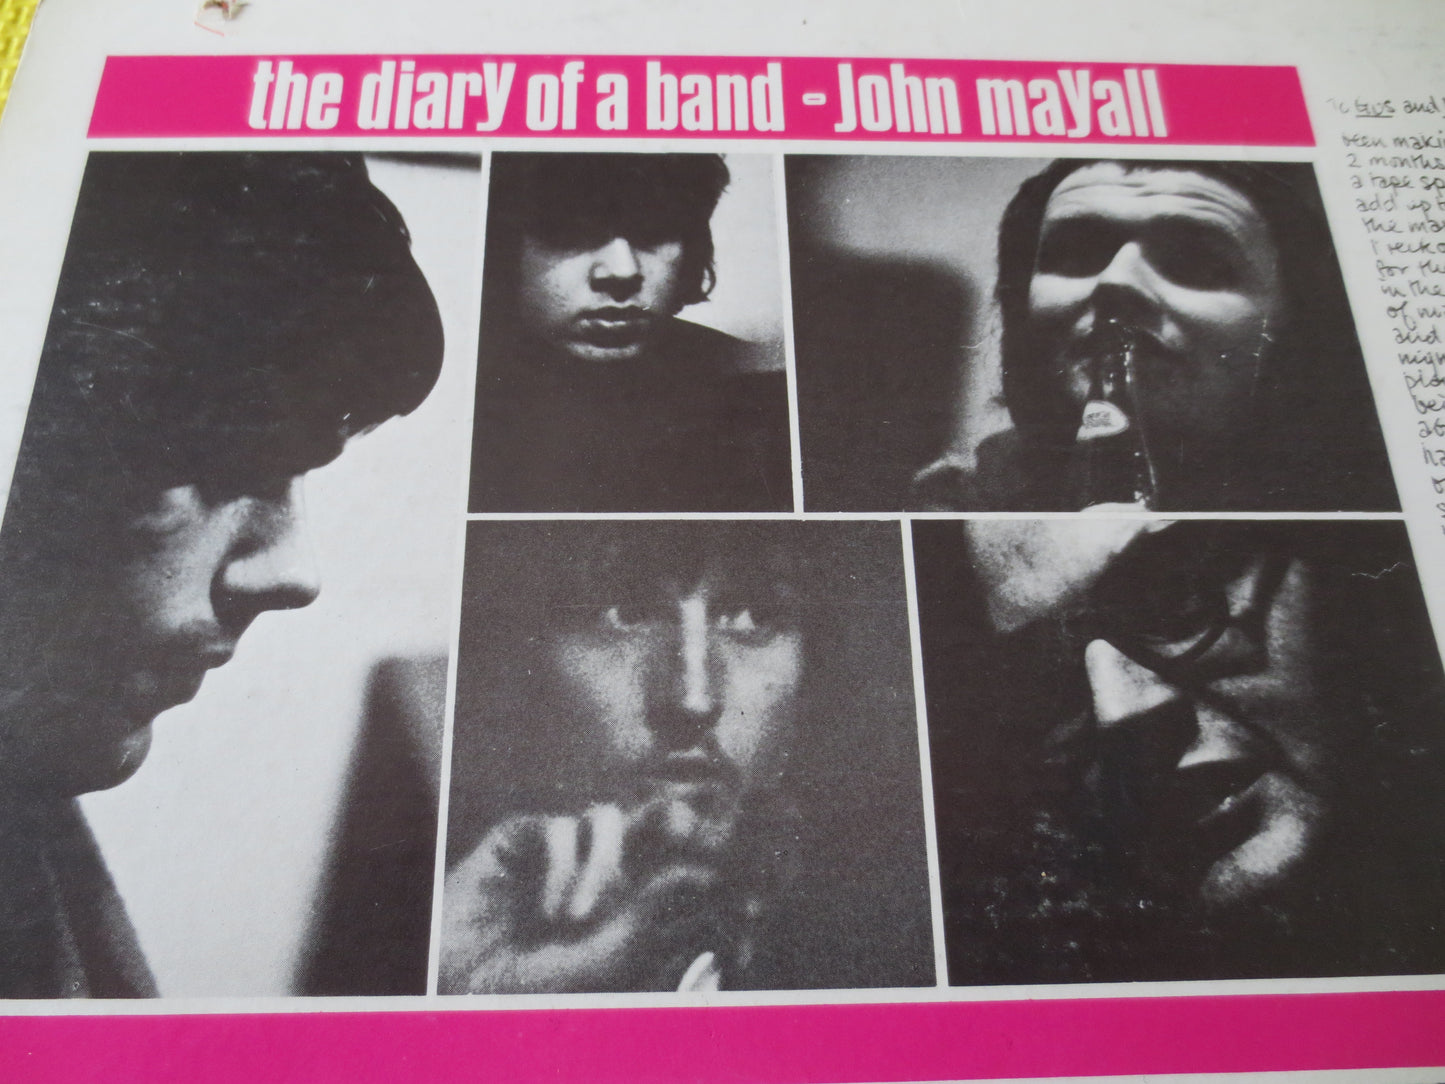 JOHN MAYALL, The Diary of a Band, John Mayall Records, John Mayall Albums, John Mayall lps, Vinyl Record, lps, 1968 Records